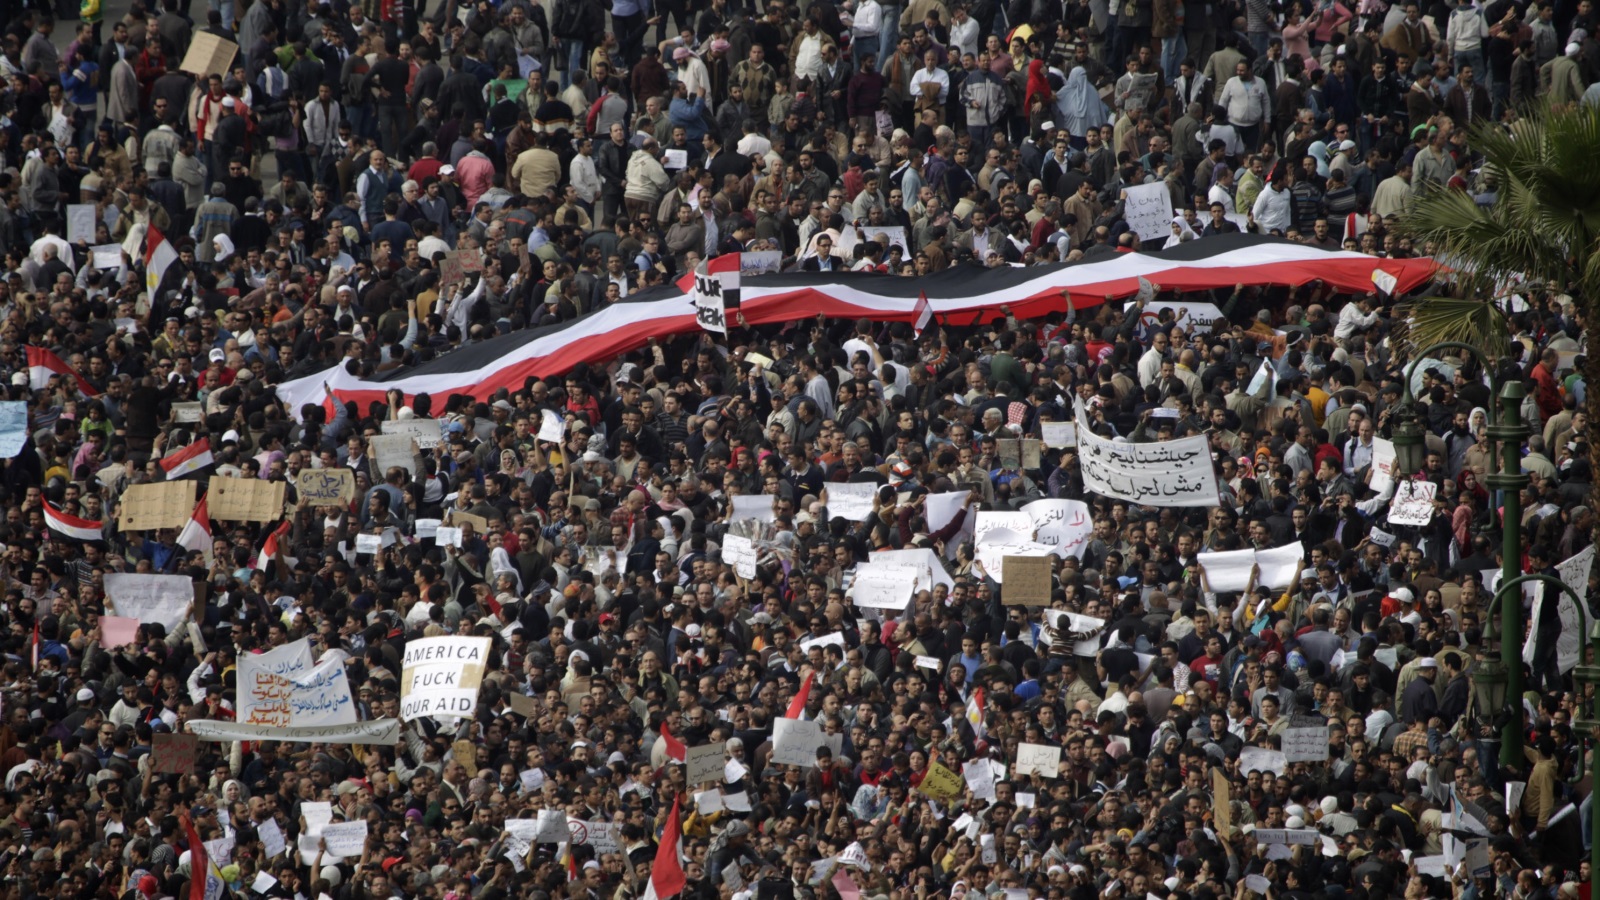 حشود كثيفة في الميادين رفعوا شعارات تطالب برحيل مبارك ونظامه رويترز